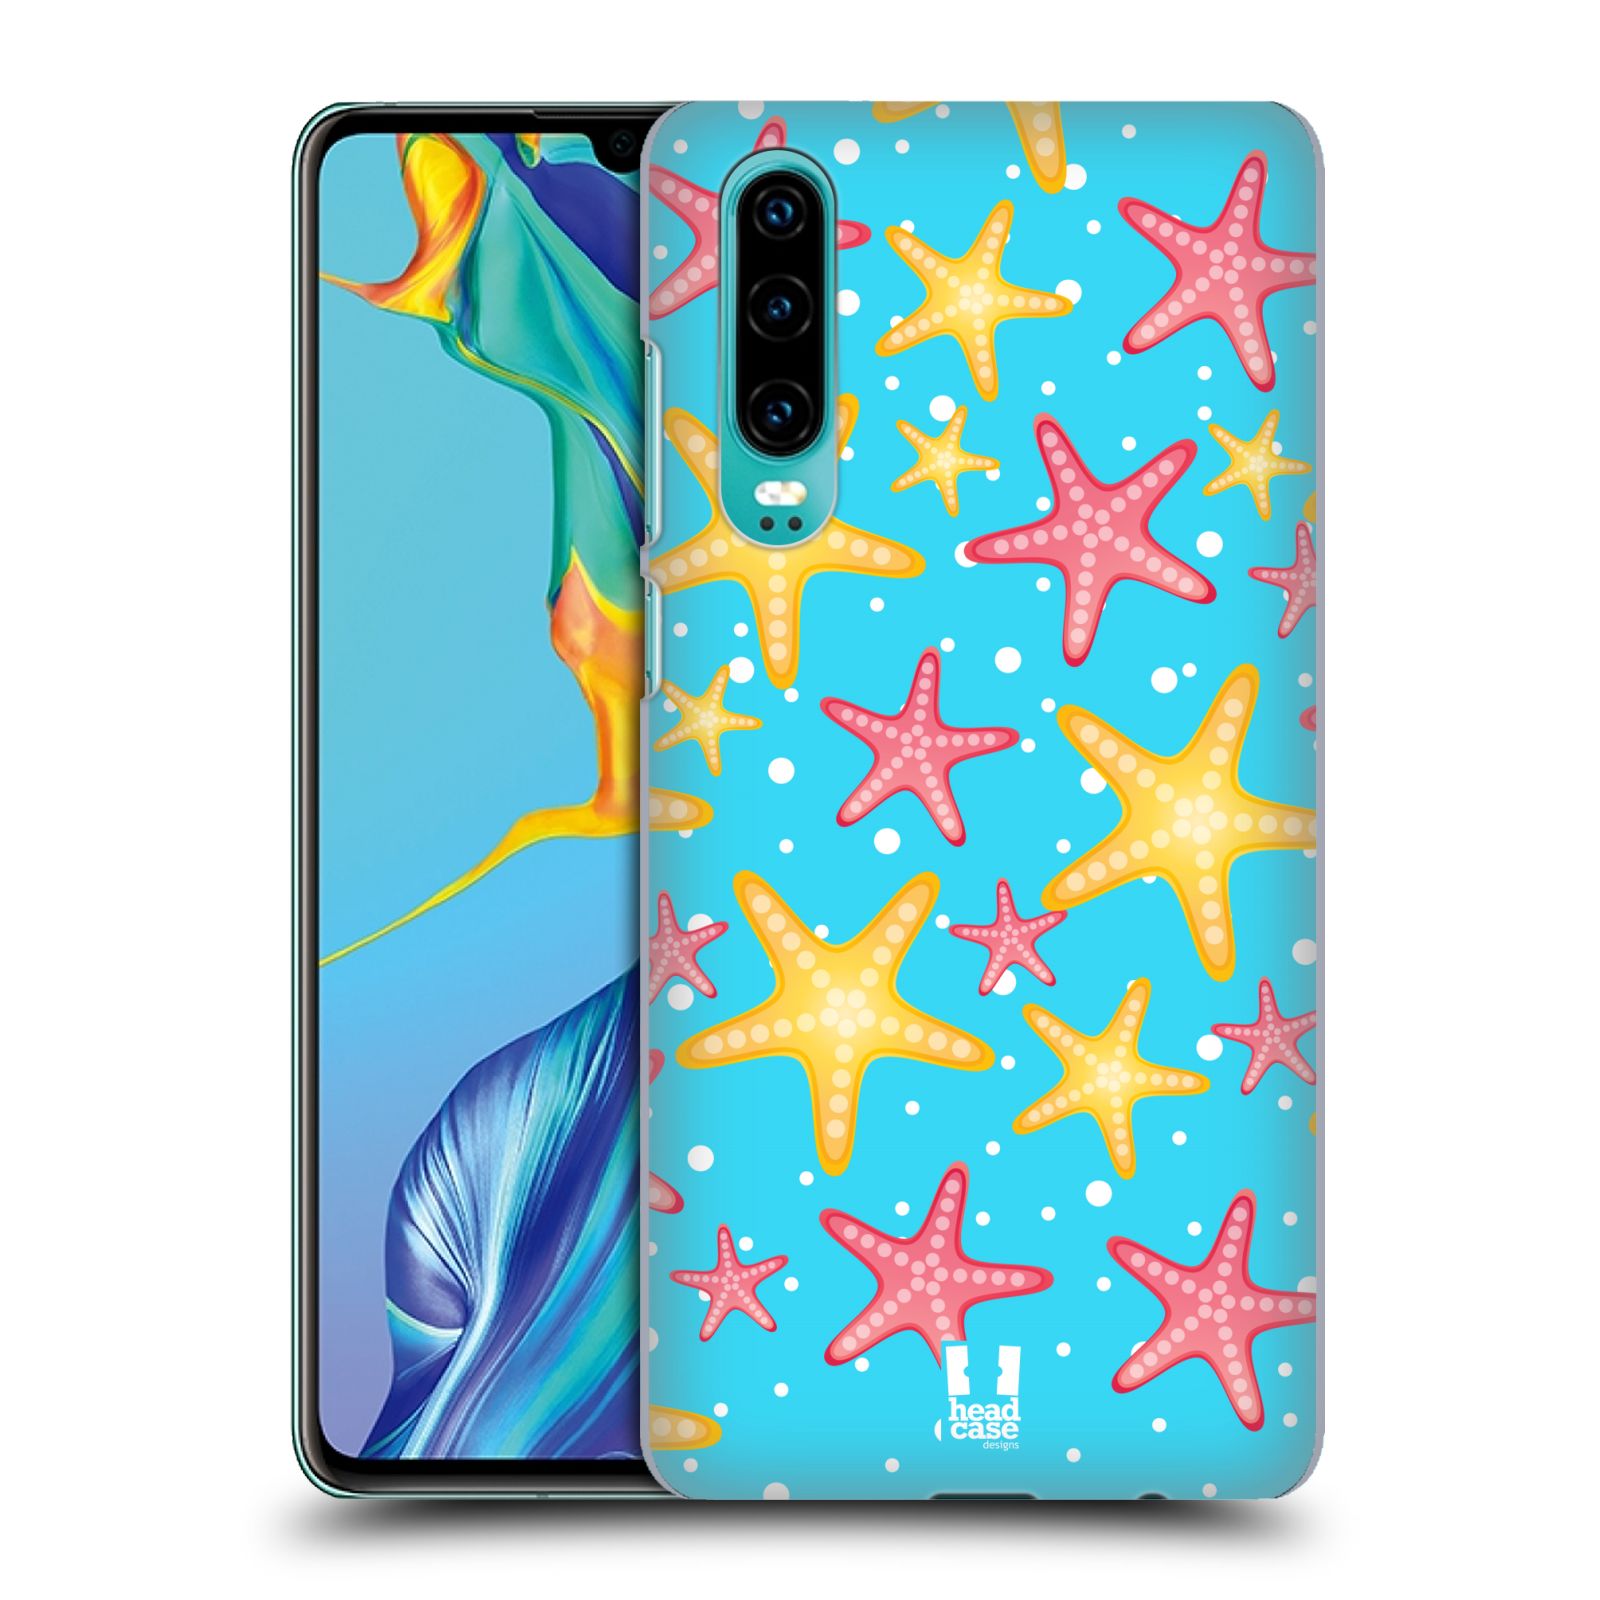 Zadní obal pro mobil Huawei P30 - HEAD CASE - kreslený mořský vzor hvězda